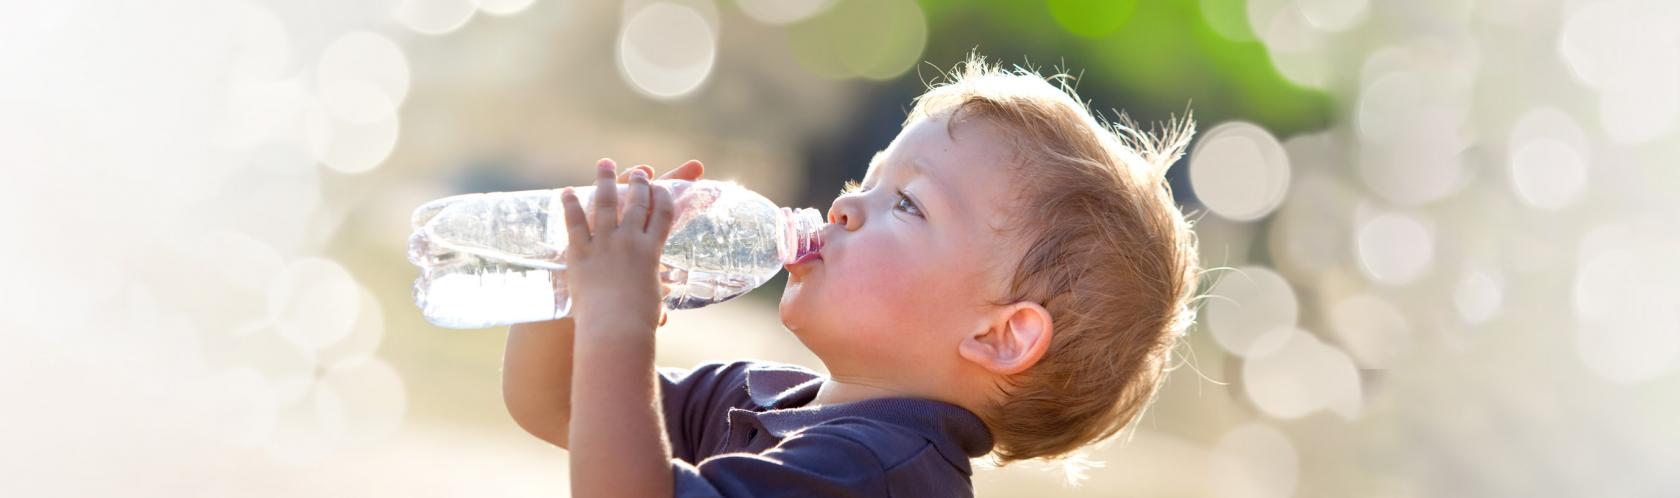 Dlaczego warto pić wodę? | Pacjent